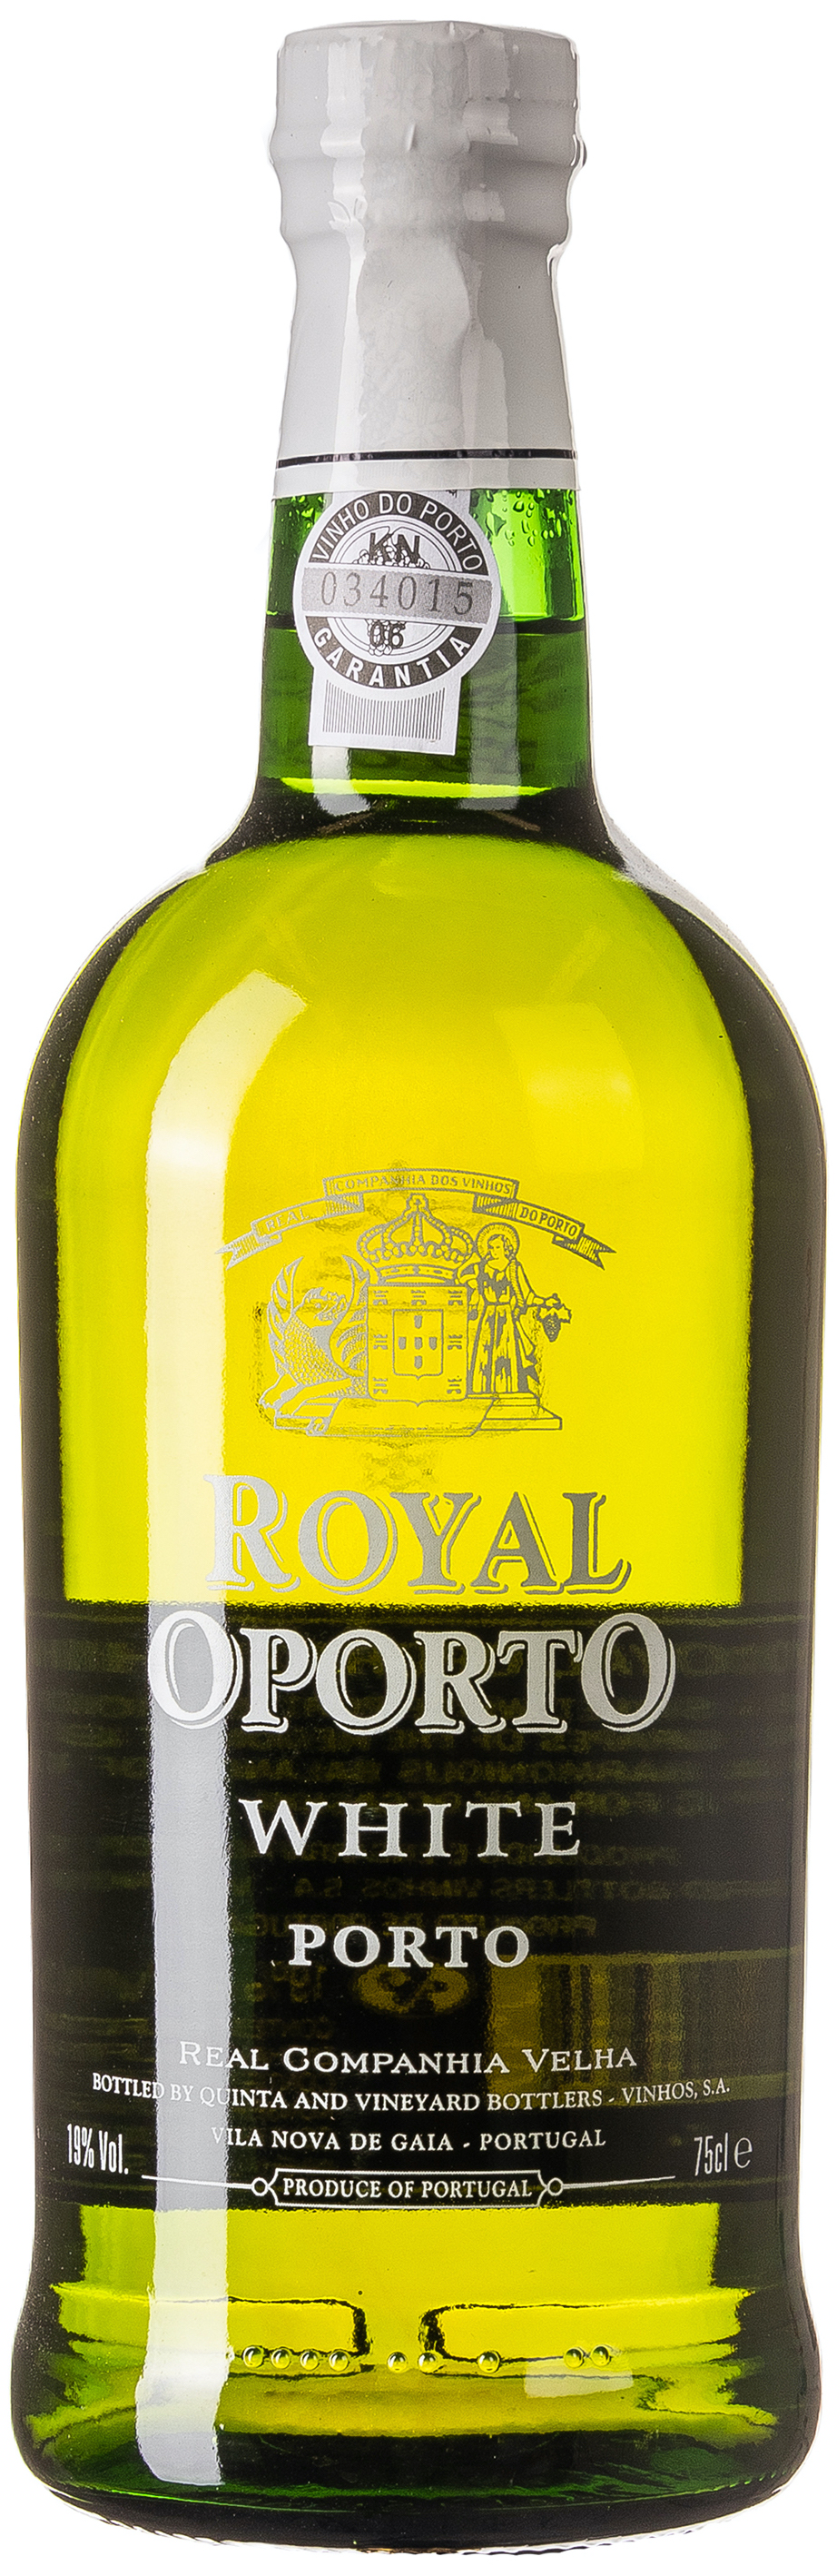 Royal Oporto White Poro 19% vol. 0,75L